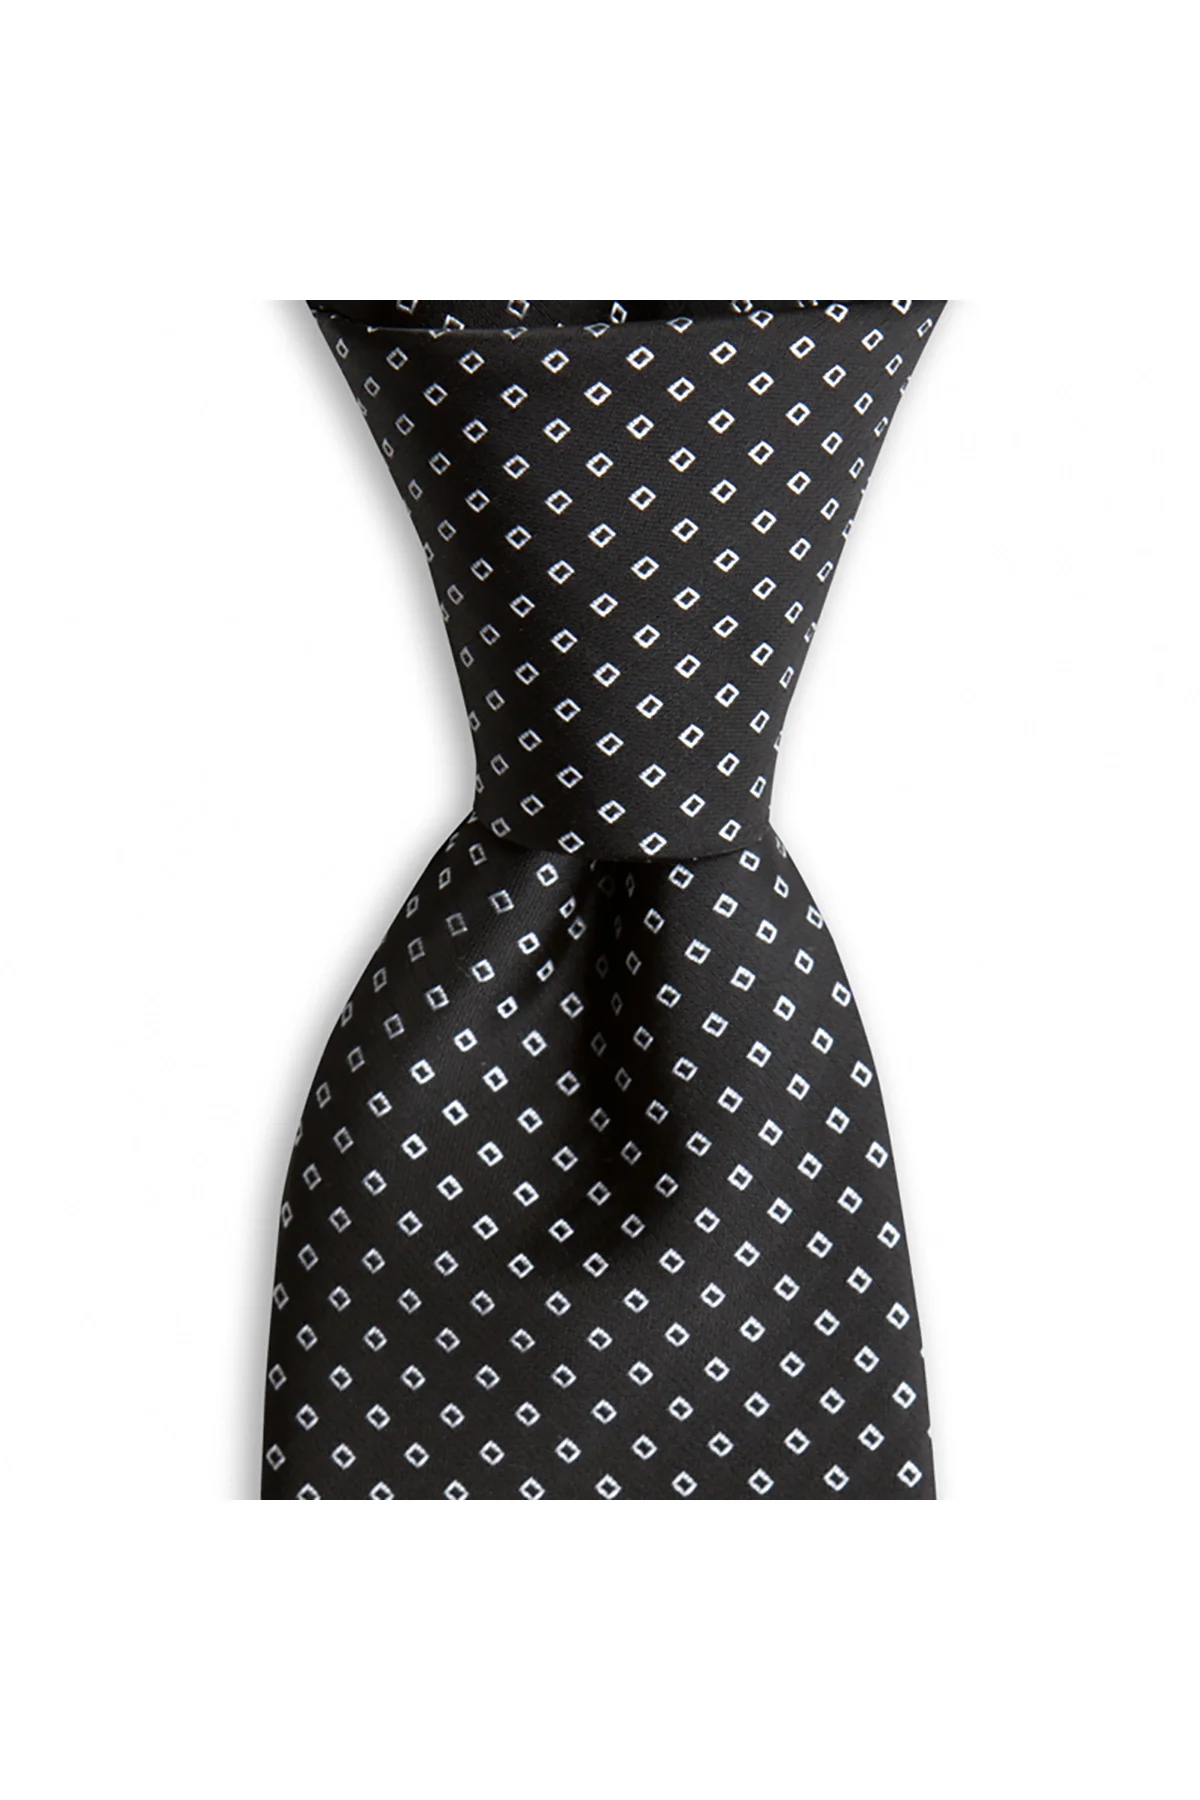 Фото Мужской галстук классического дизайна Сделано в Италии ширина 8 см длина 145